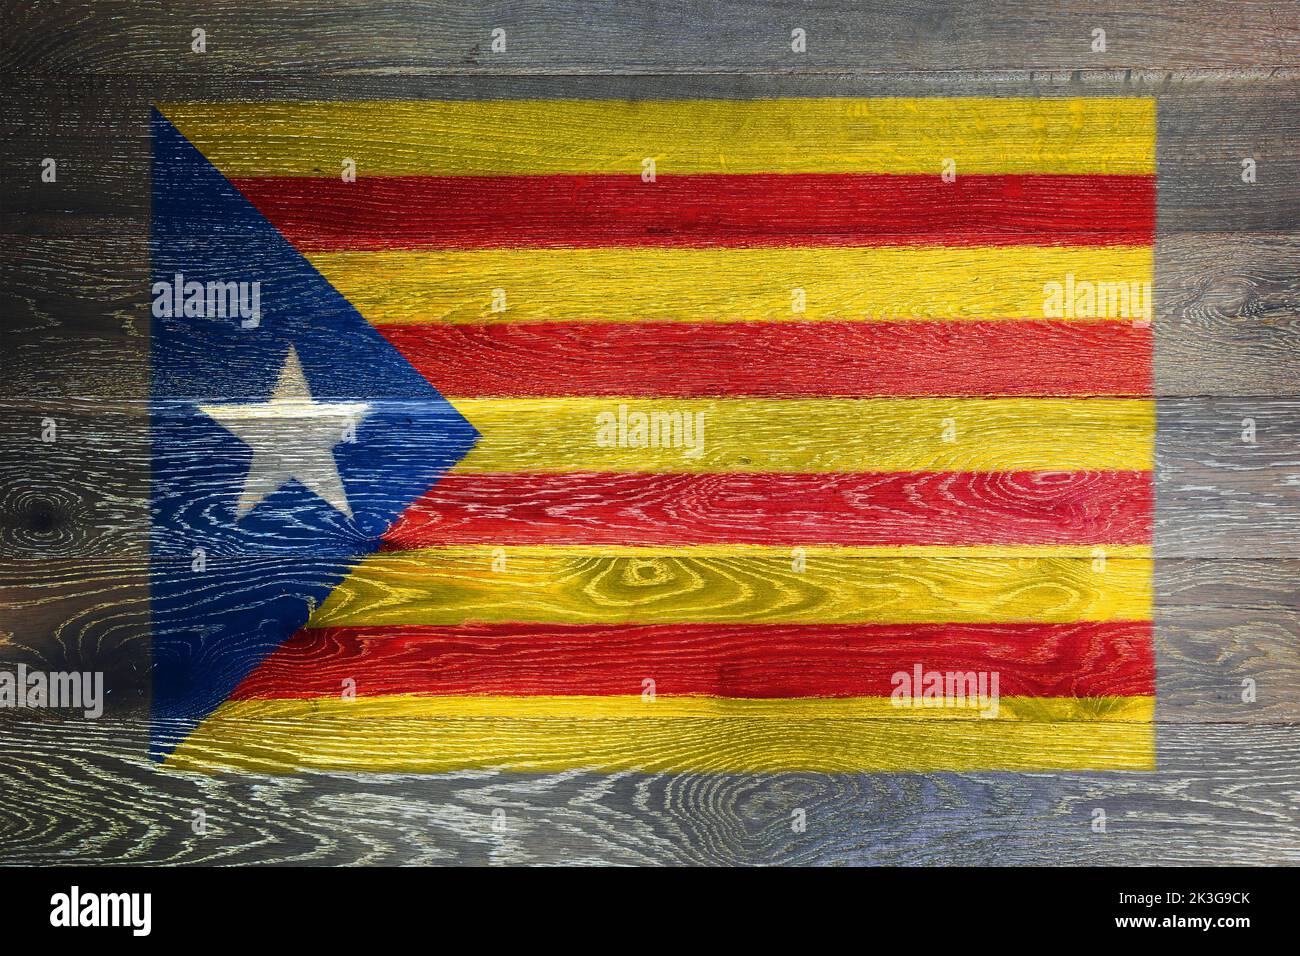 Bandera de independencia de Cataluña sobre fondo rústico de madera antigua superficie Foto de stock